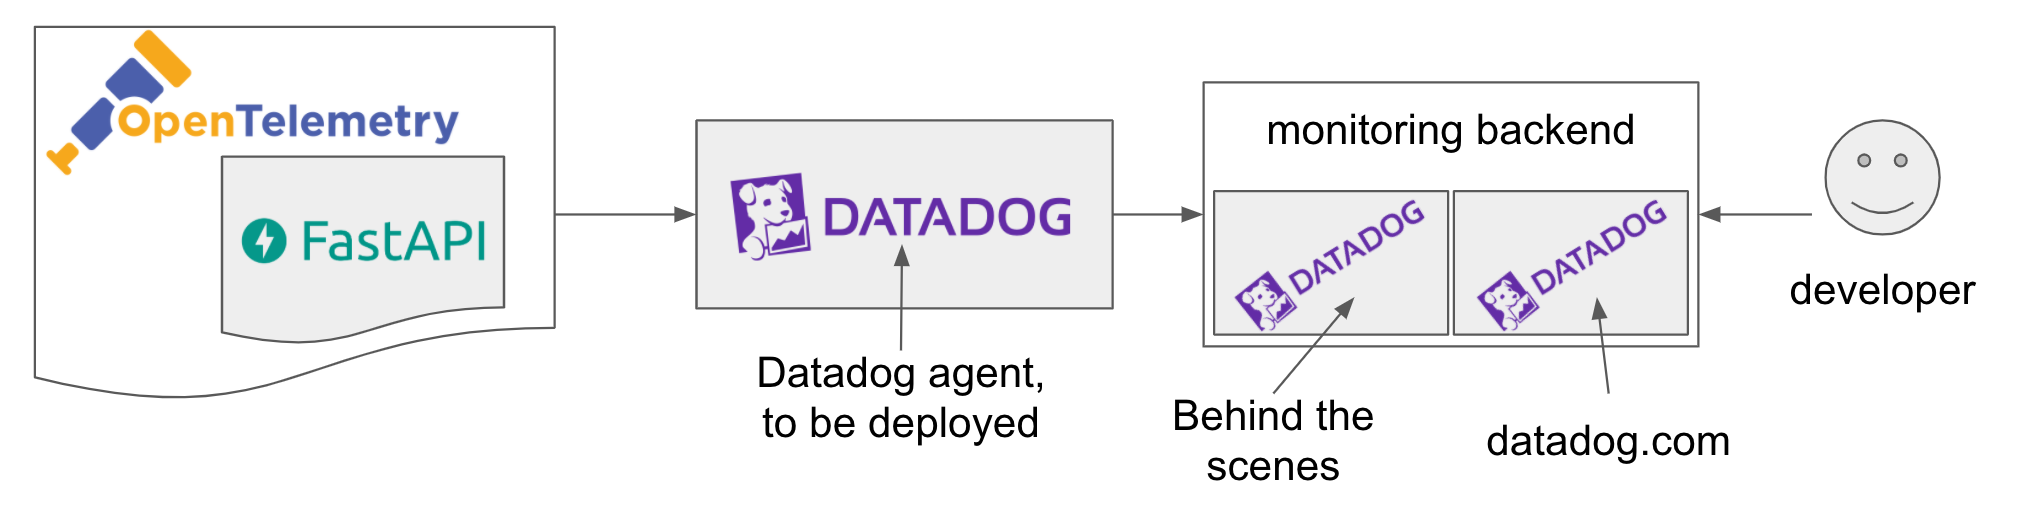 opentelemetry datadog